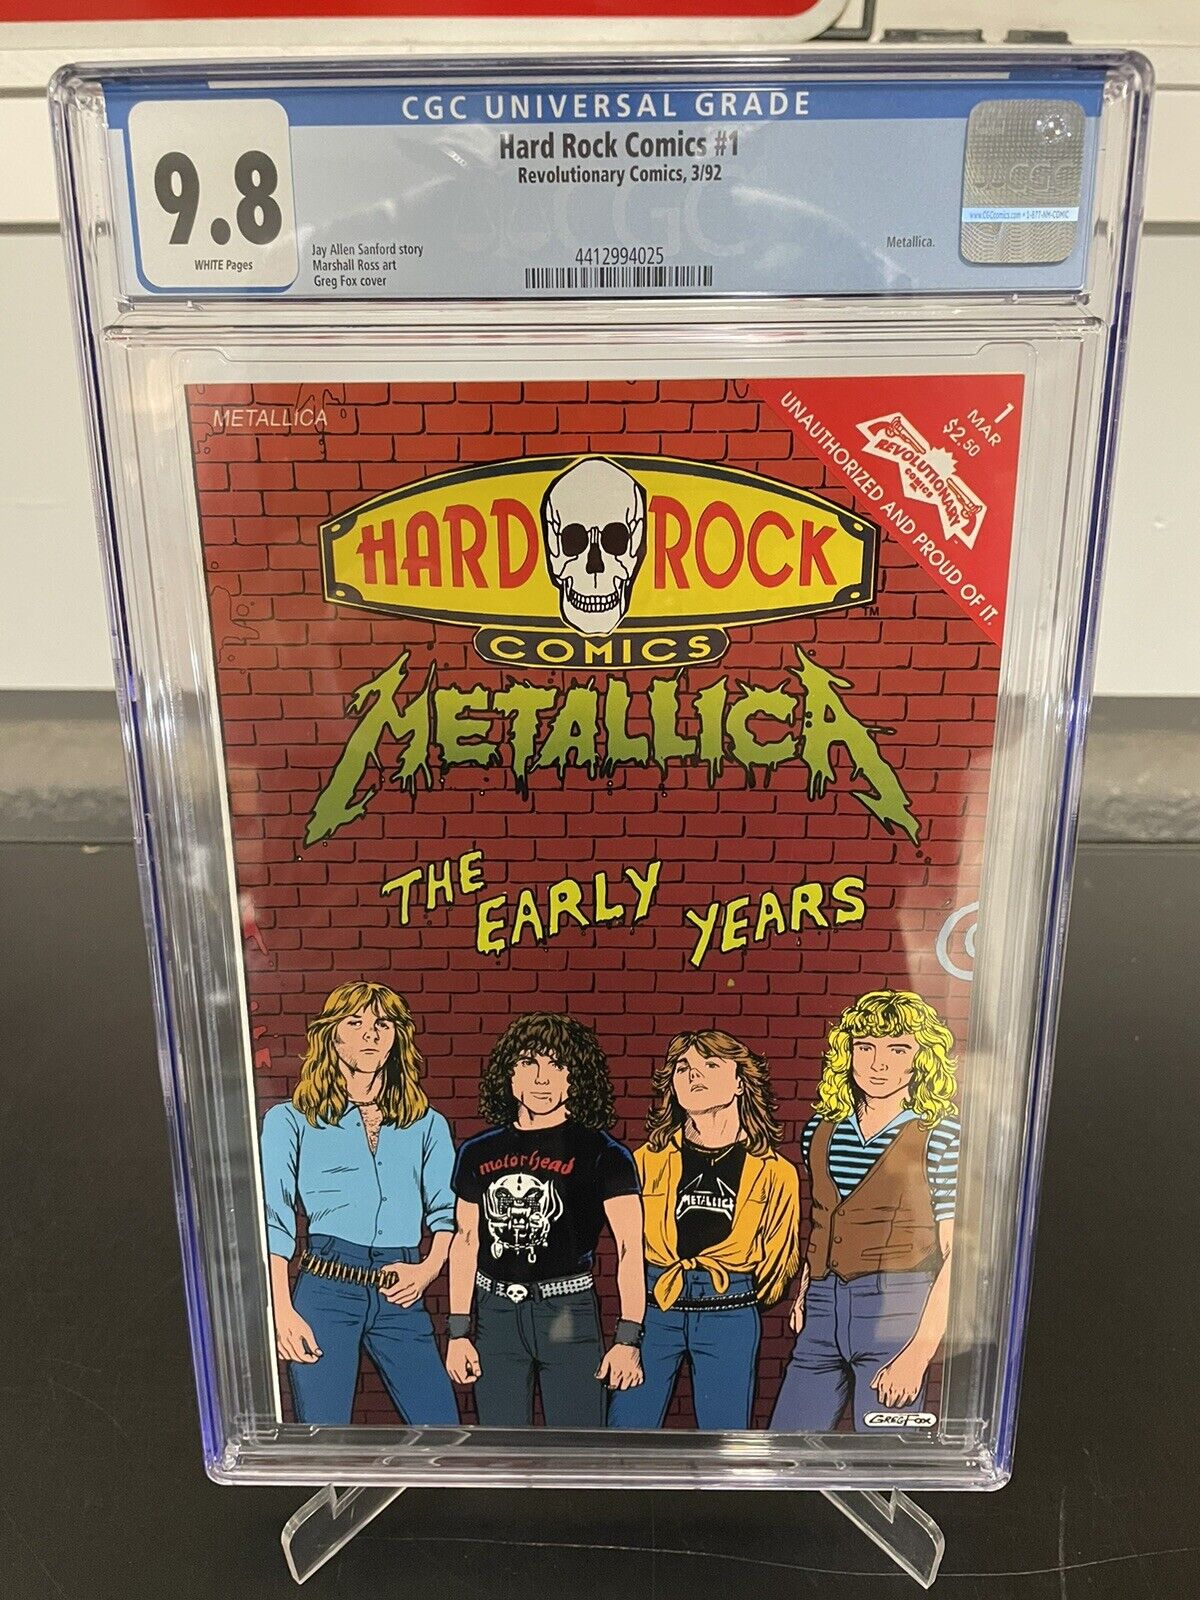 Hard Rock Comics #1 - Metallica “the early years” - CGC 9.8